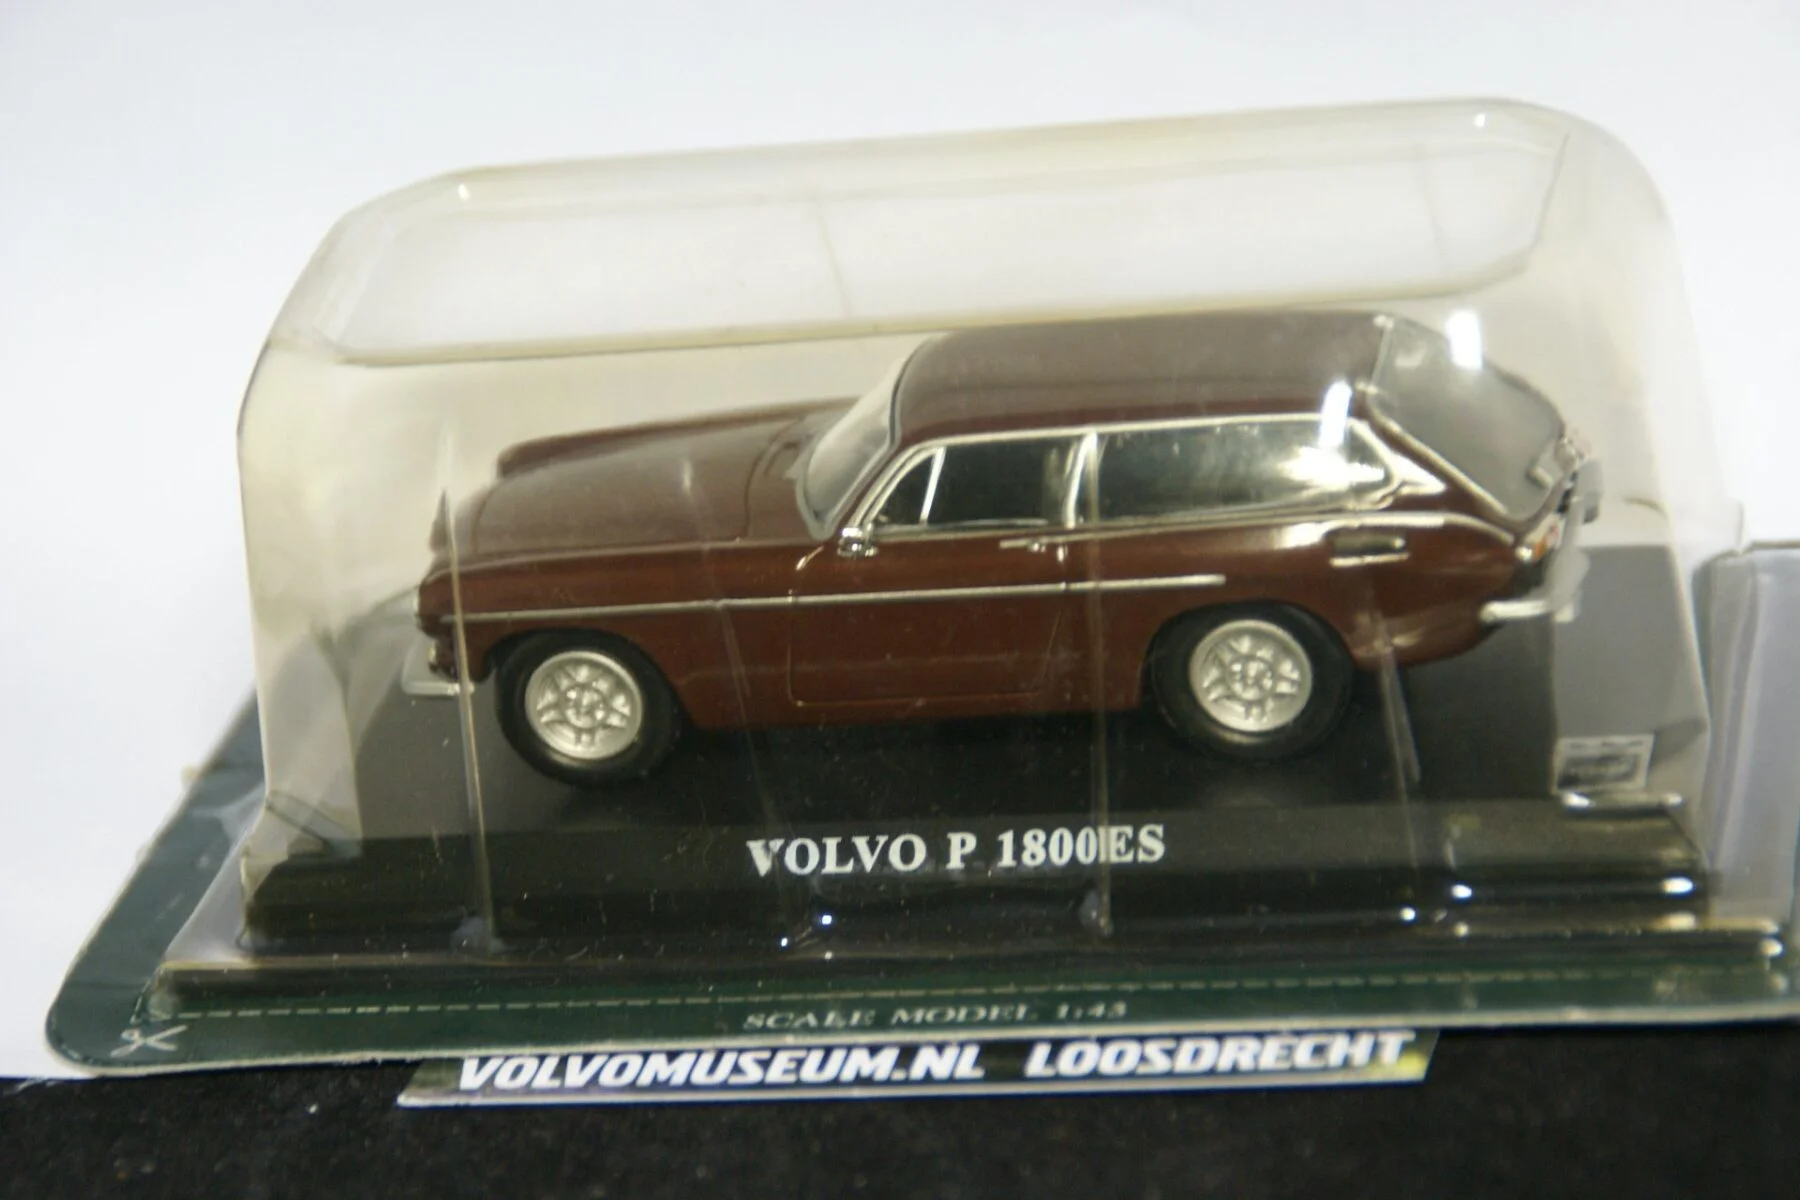 DSC02502 miniatuur 1972 Volvo 1800ES bruin 1op43 Delprado MB